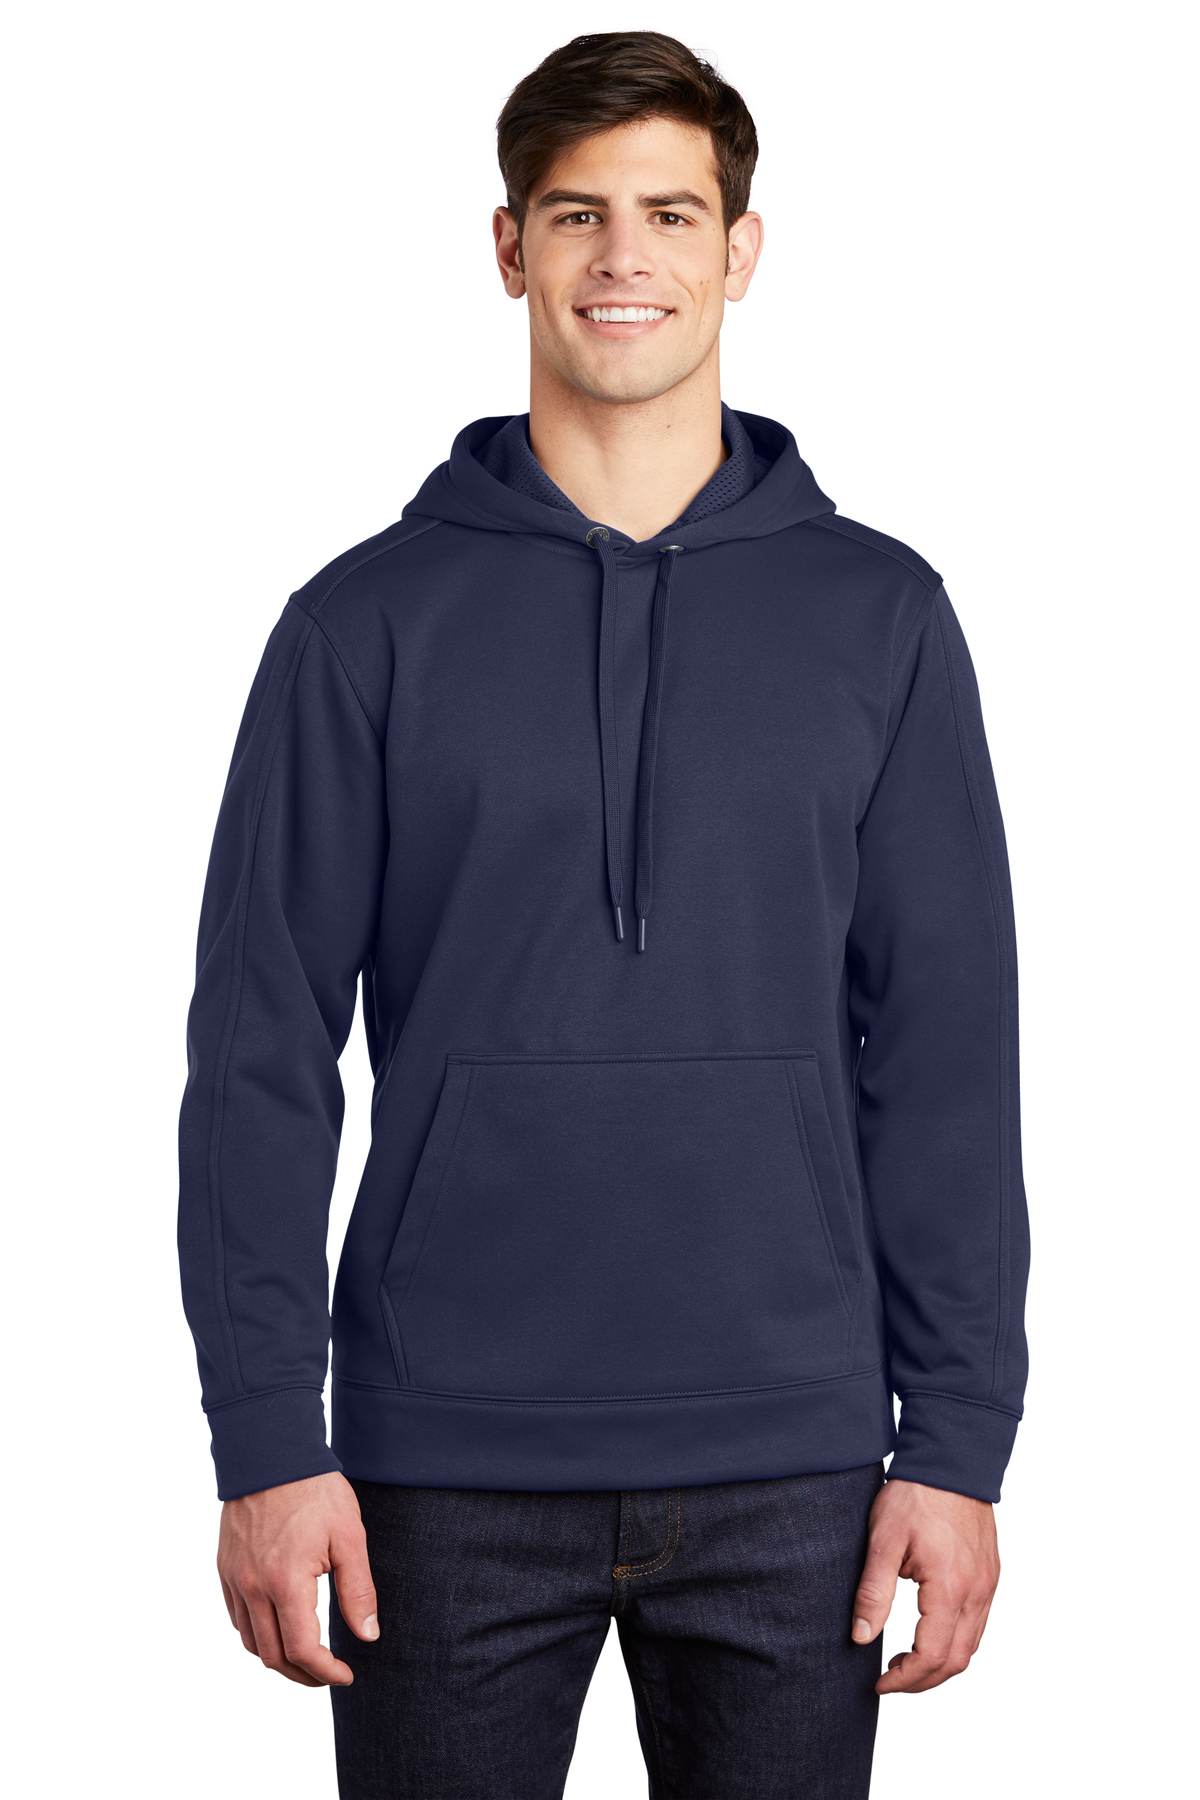 Sport-Tek Repel Fleece Hooded Pullover | Product | Sport-Tek